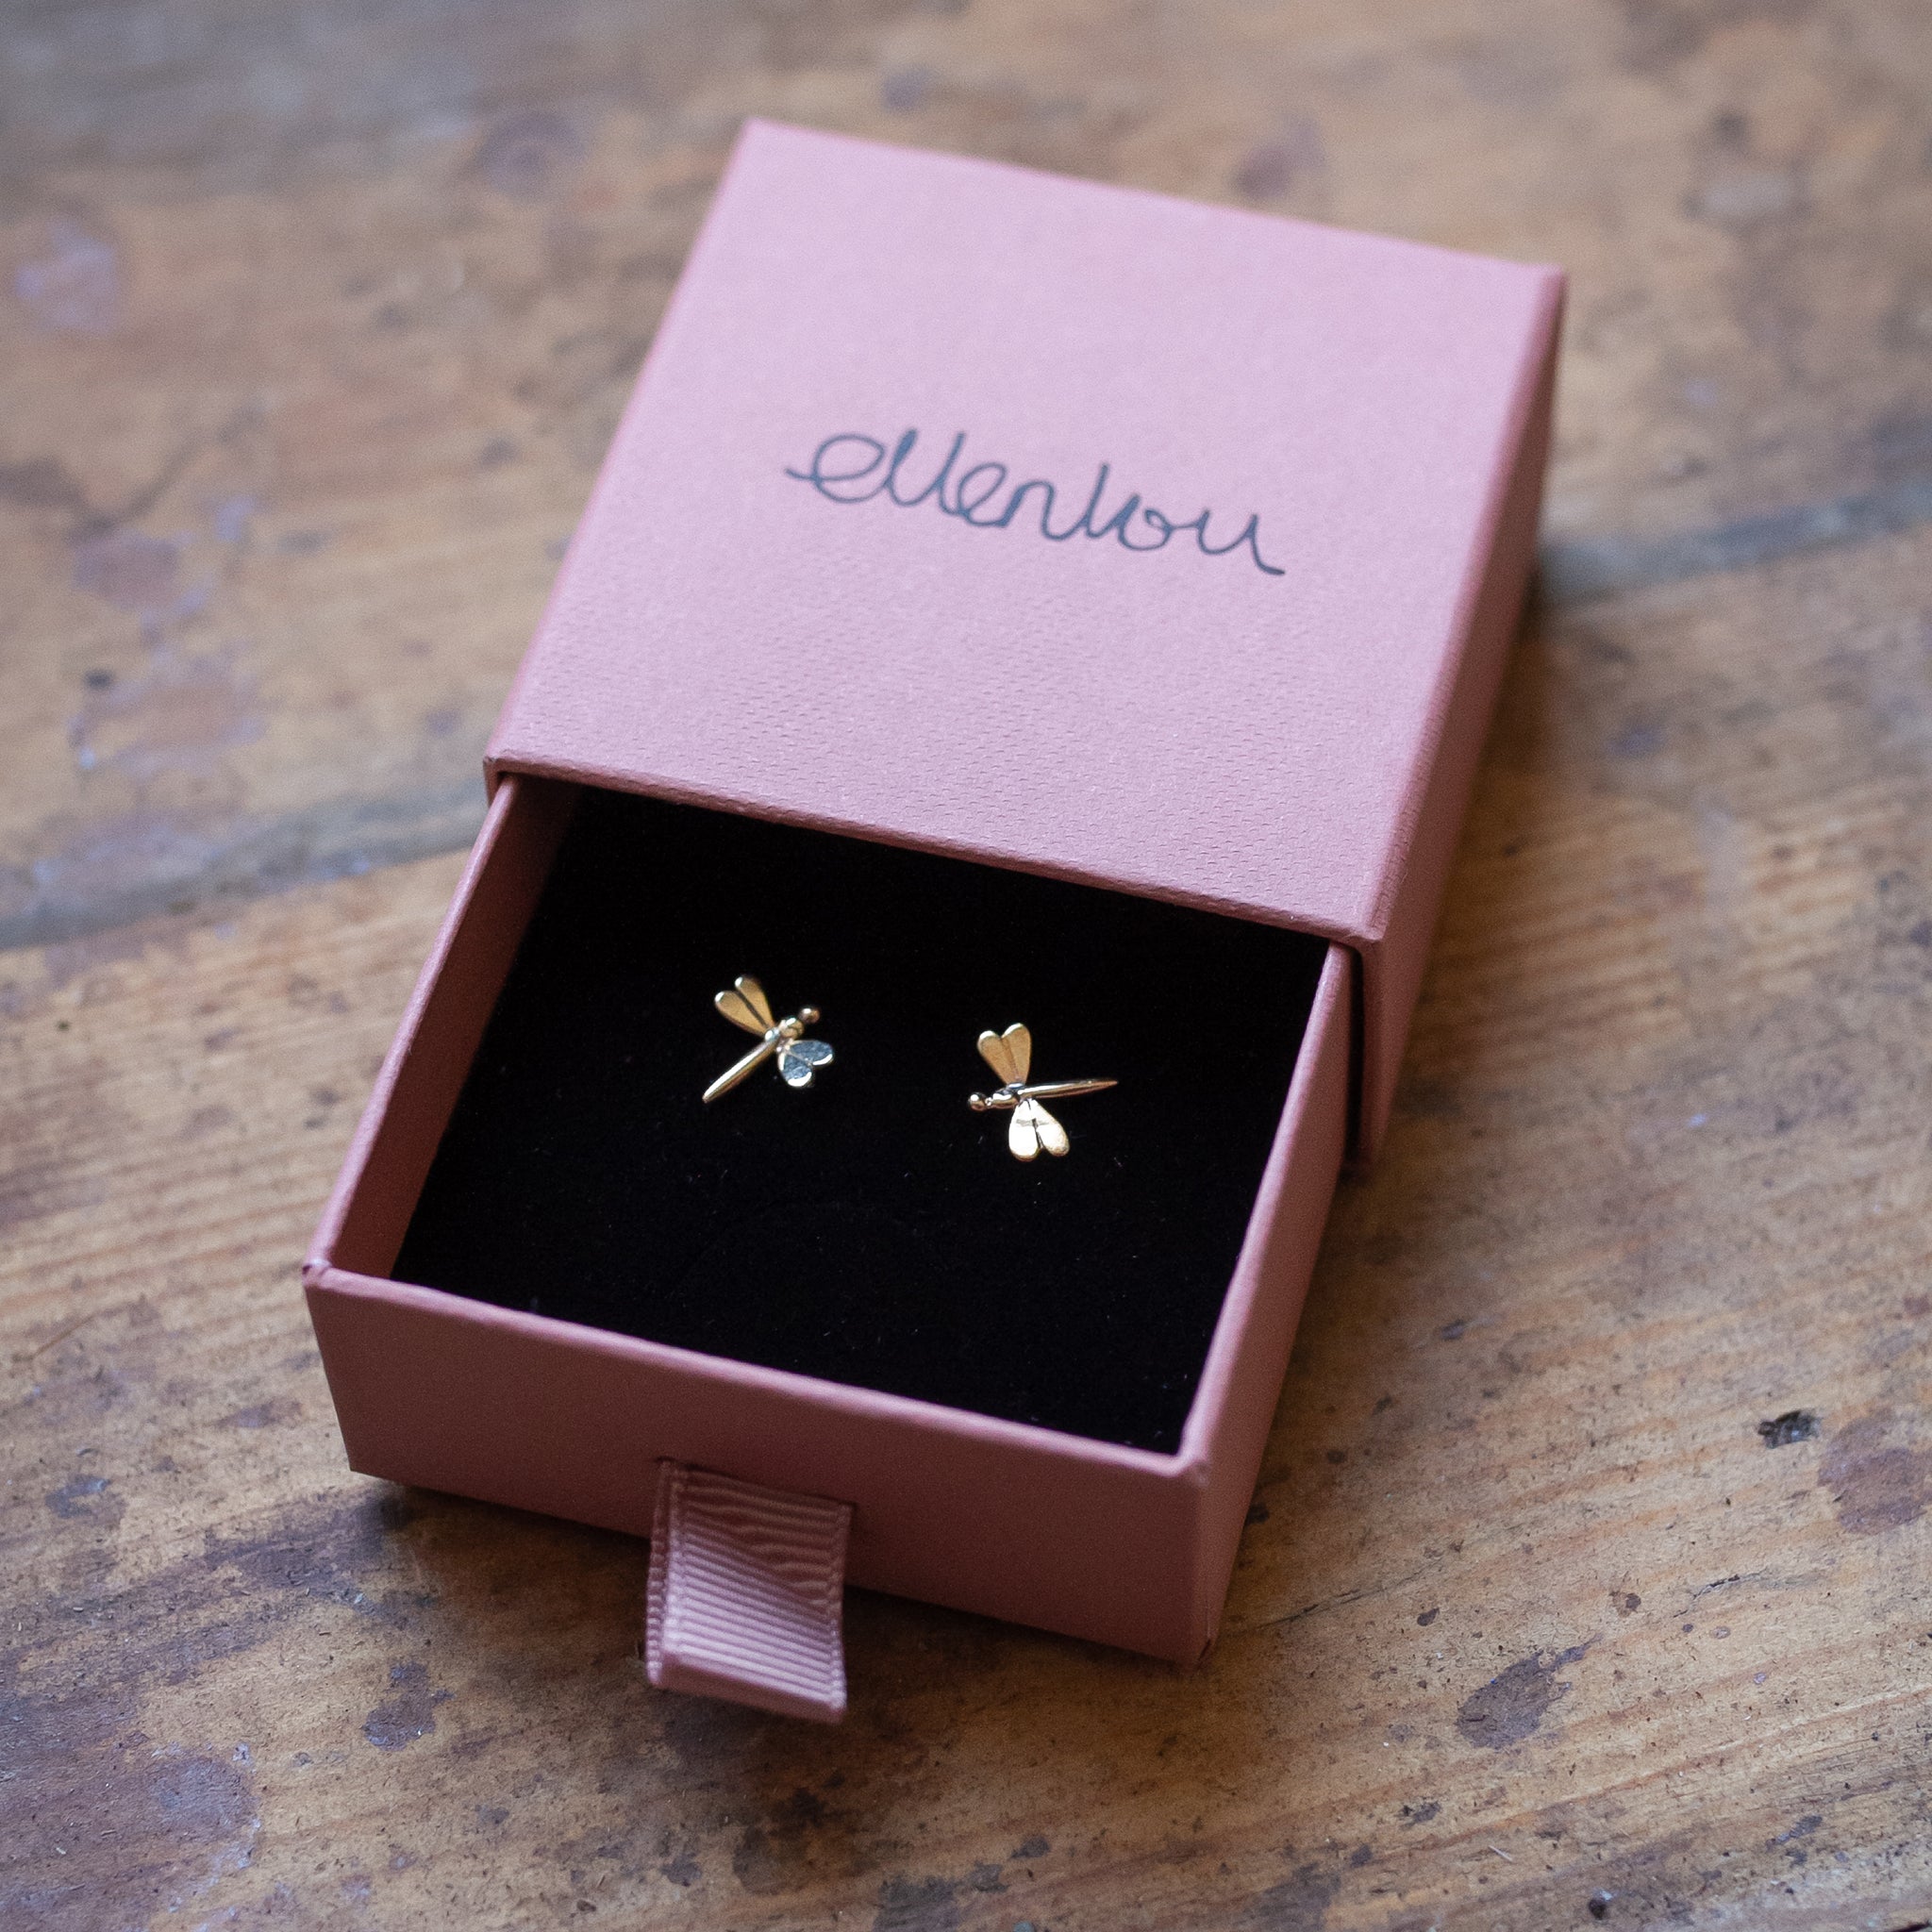 Ellen Lou Gardening Jewellery Stud Earrings Gift Box